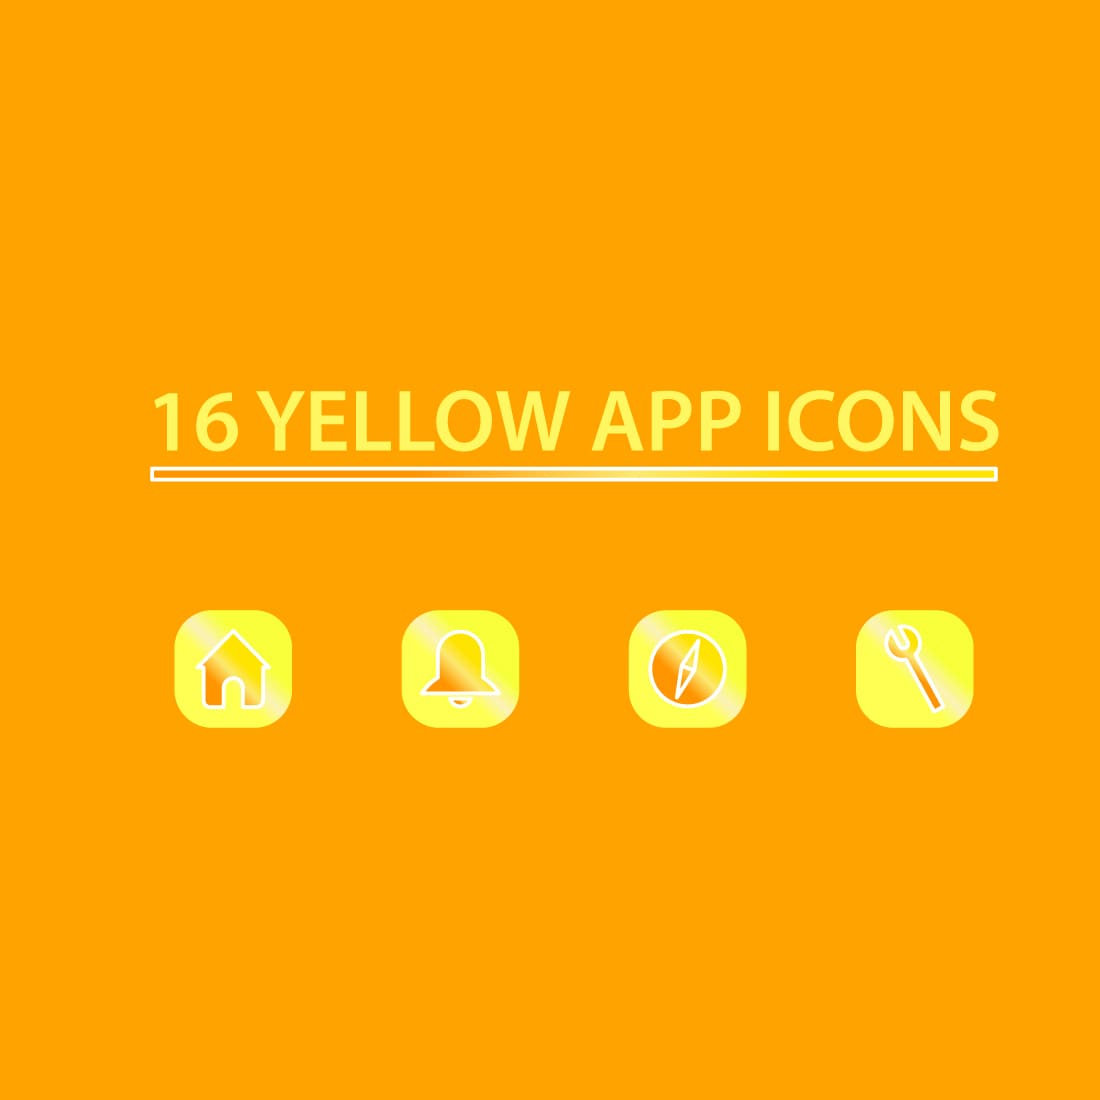 2 Yellow App Icons Aesthetic.